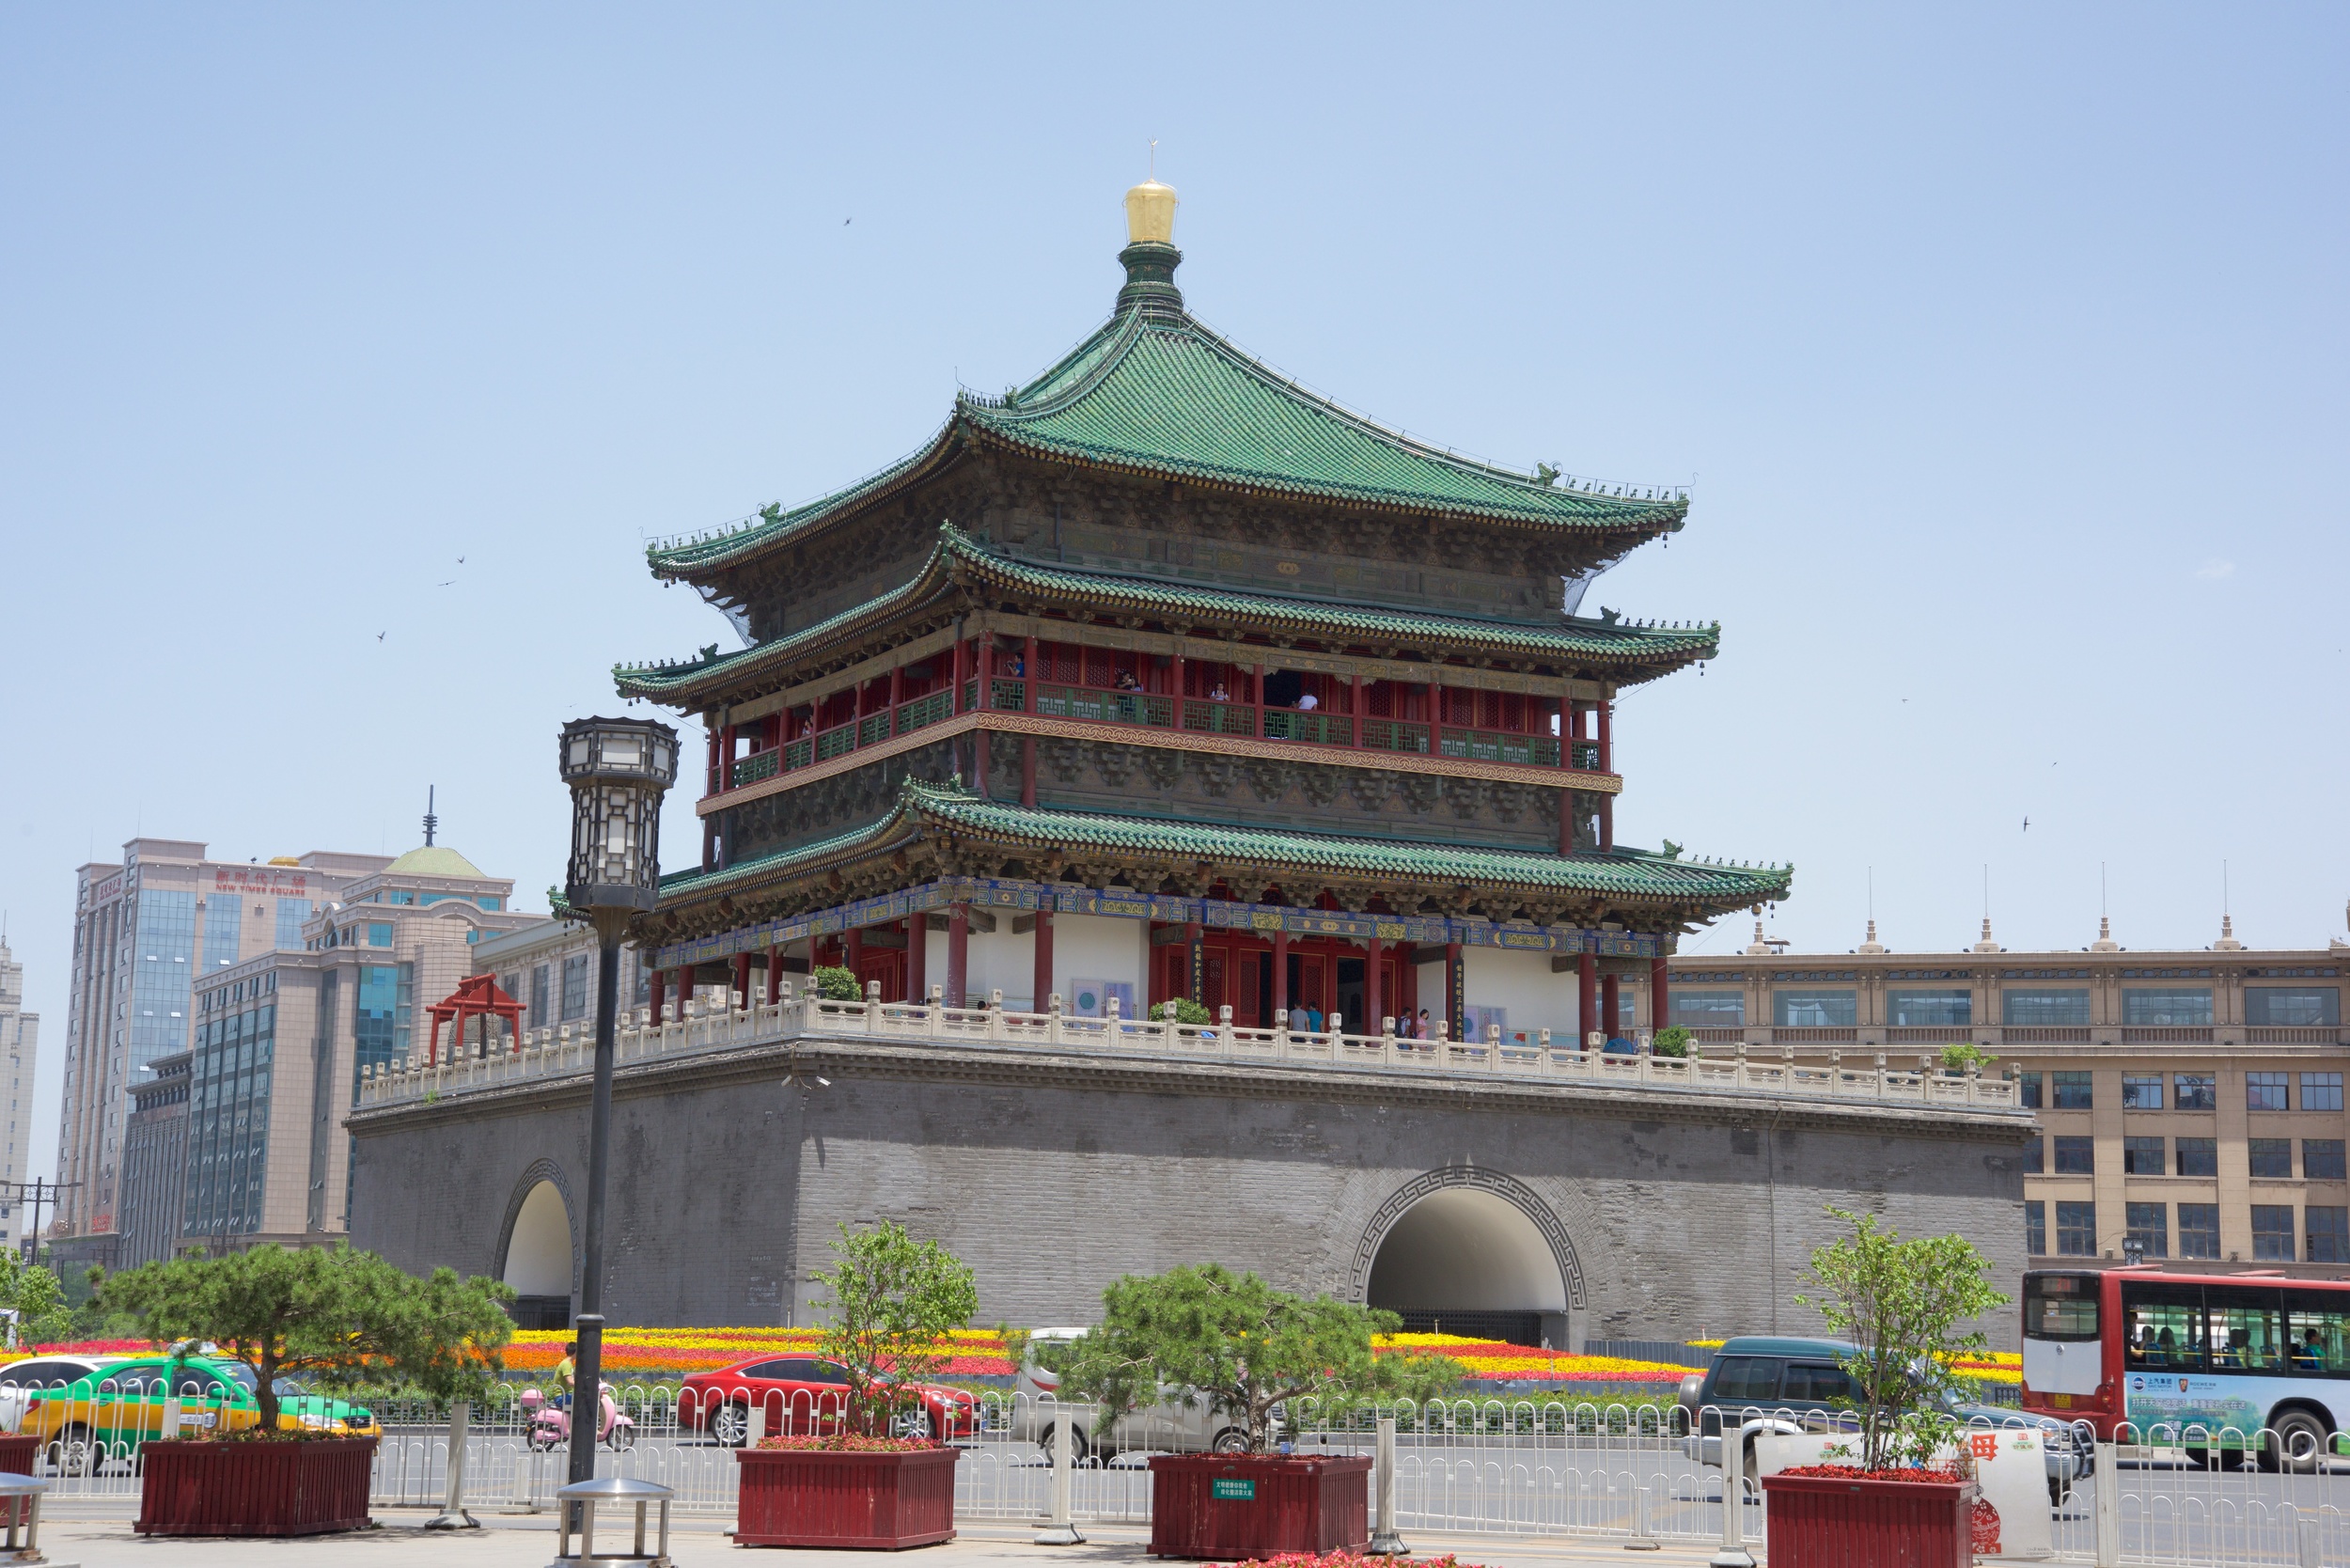  Bell Tower, Xi'an 